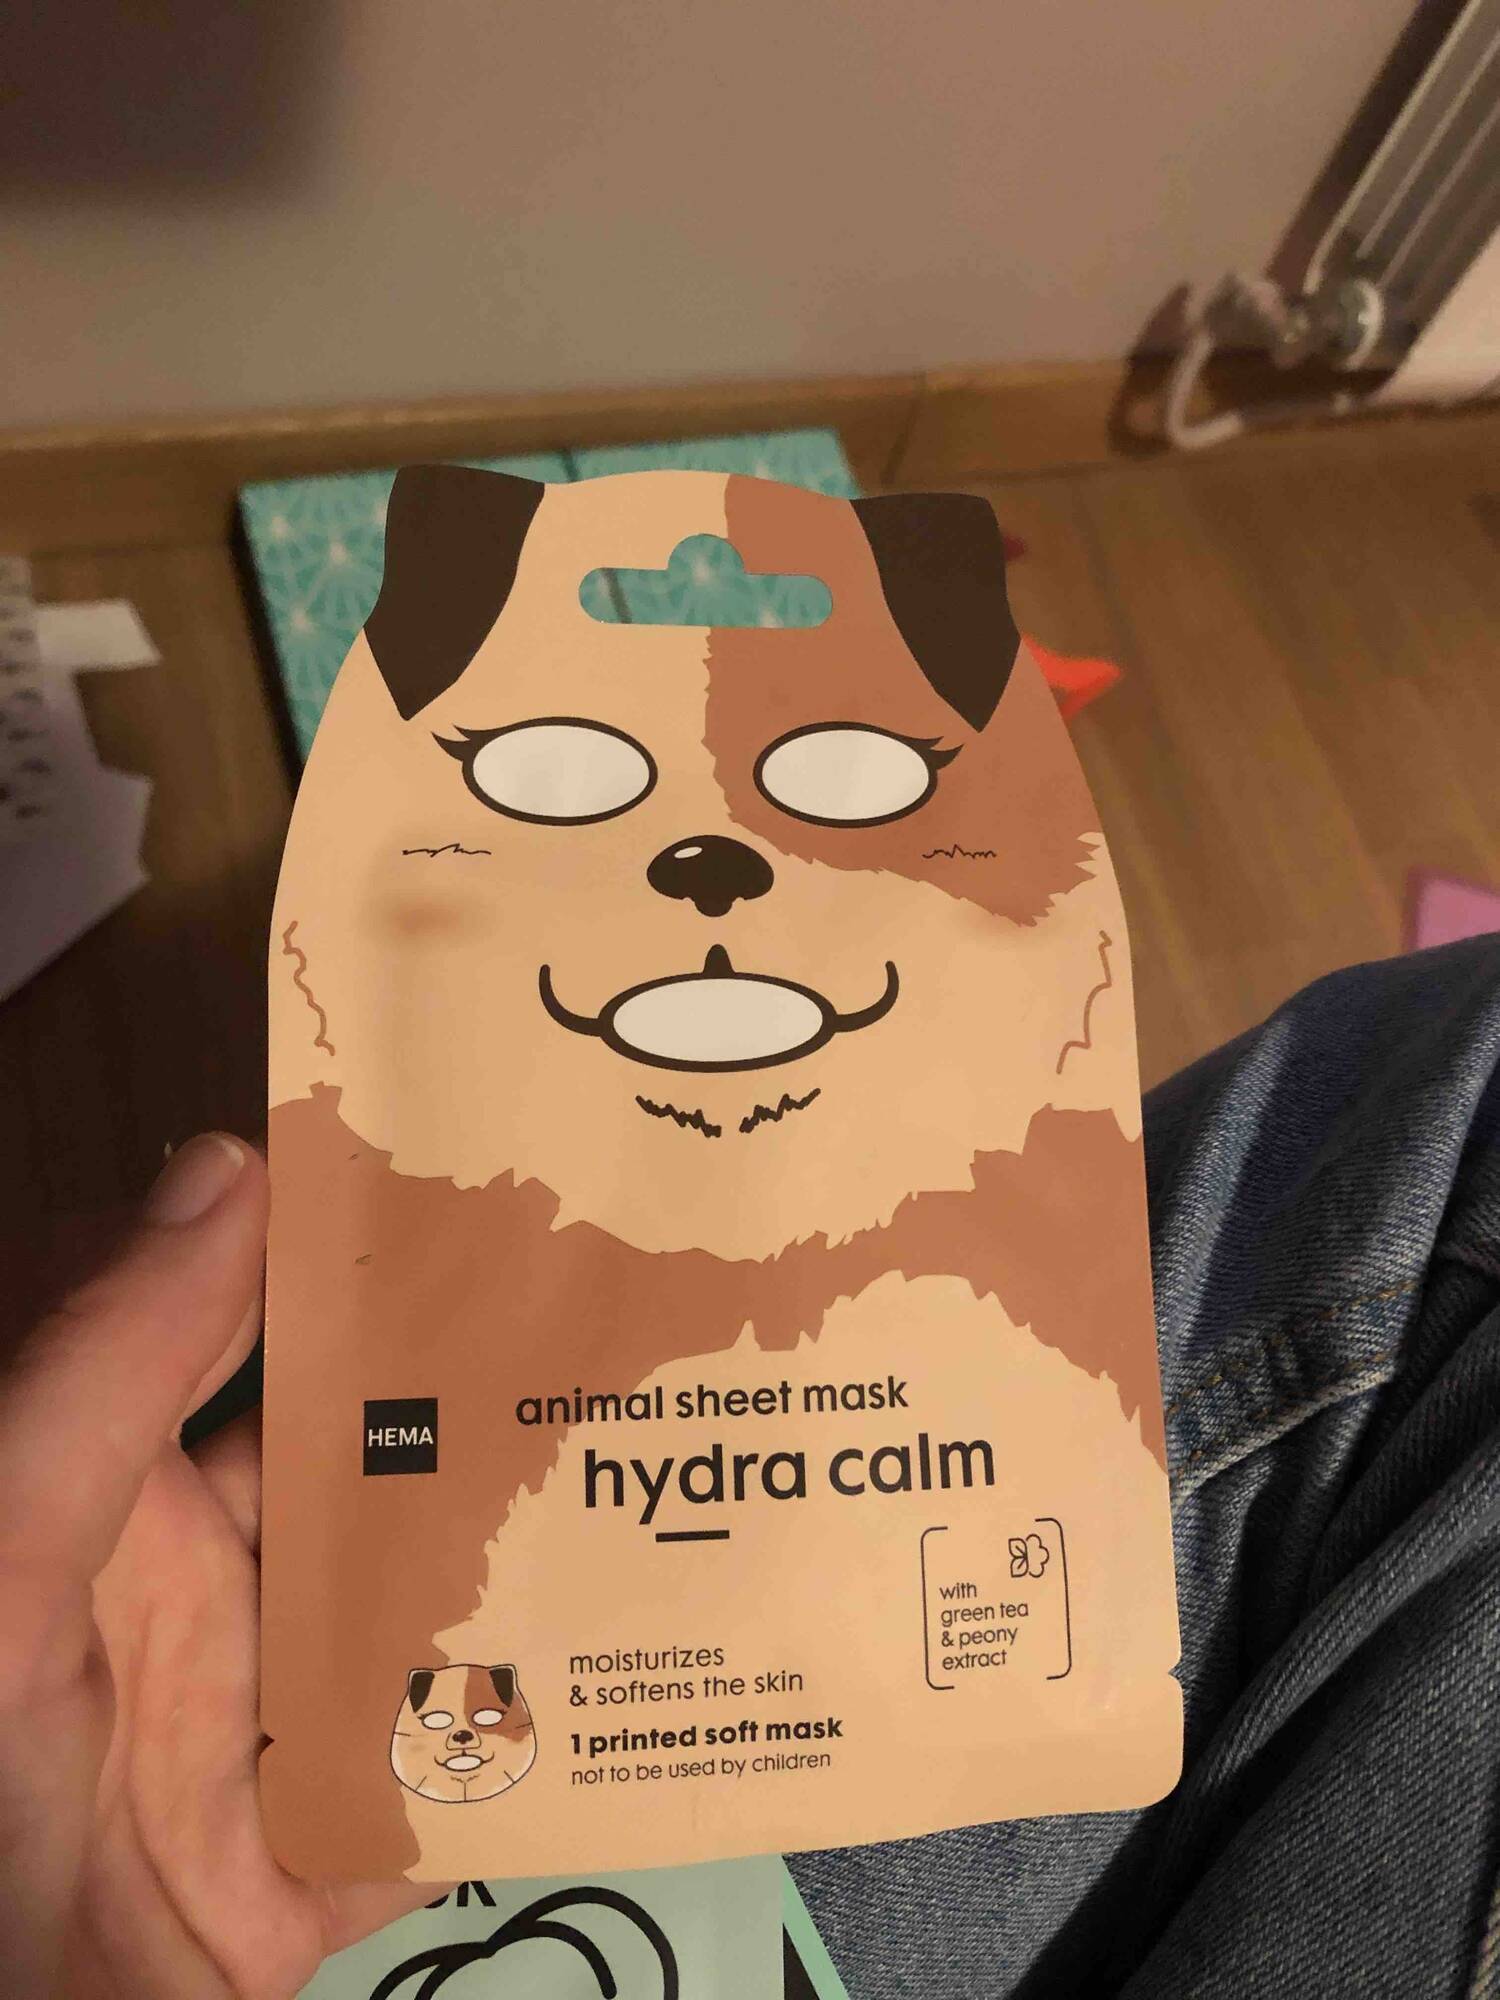 HEMA - Animal sheet mask hydra calm